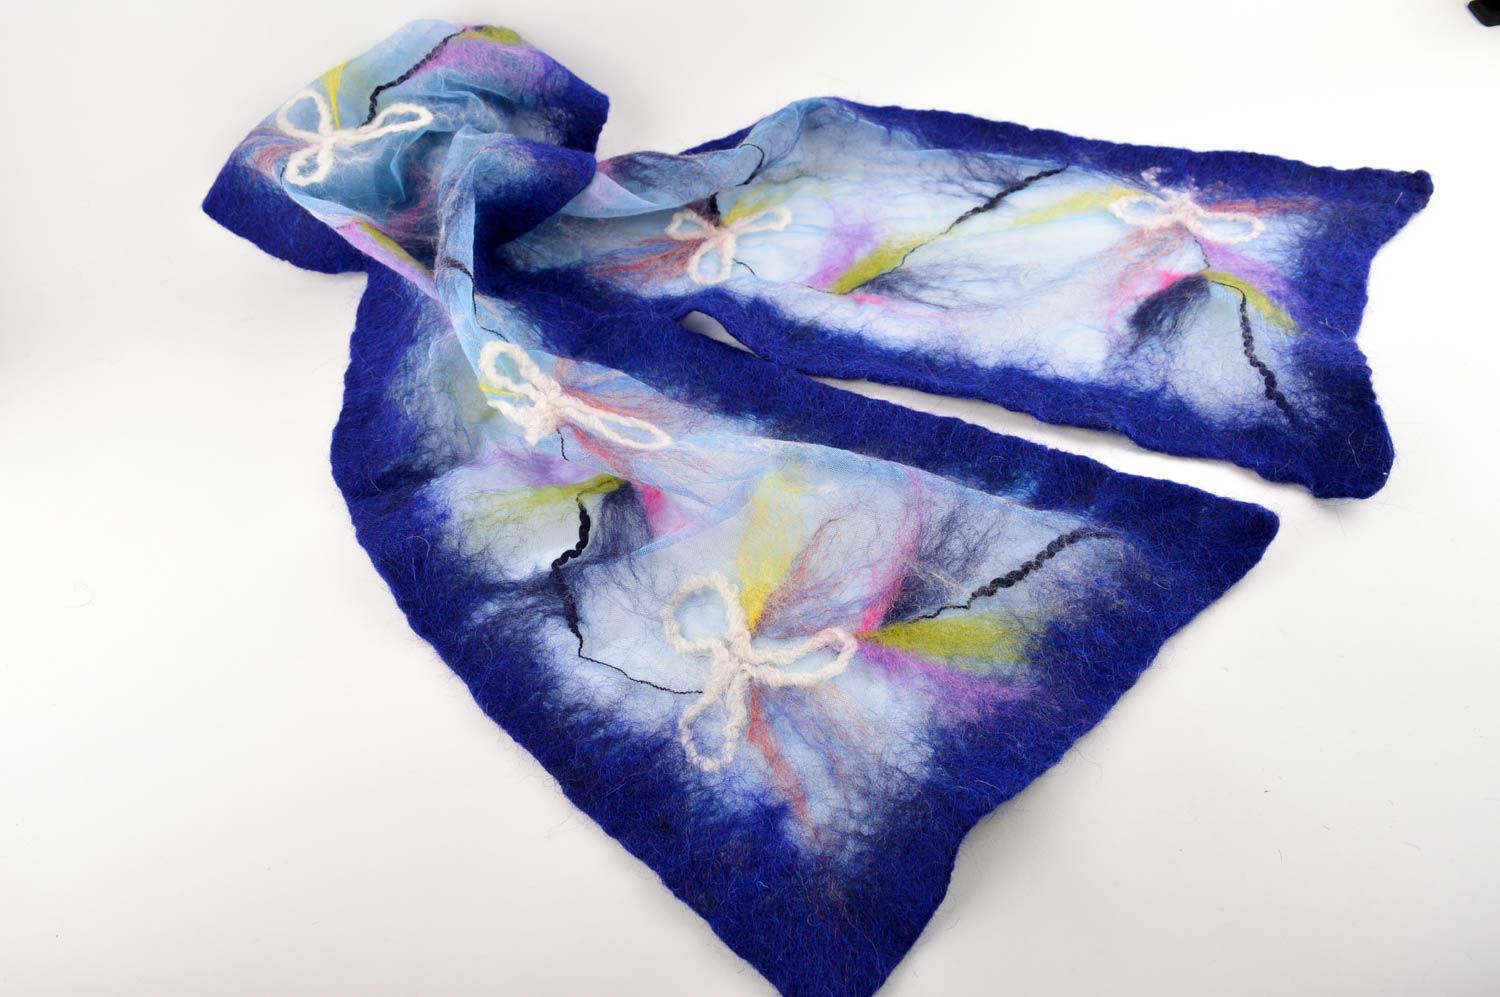 Шерстяной шарф ручной работы шарф женский синий шарф из шерсти теплый стильный фото 3